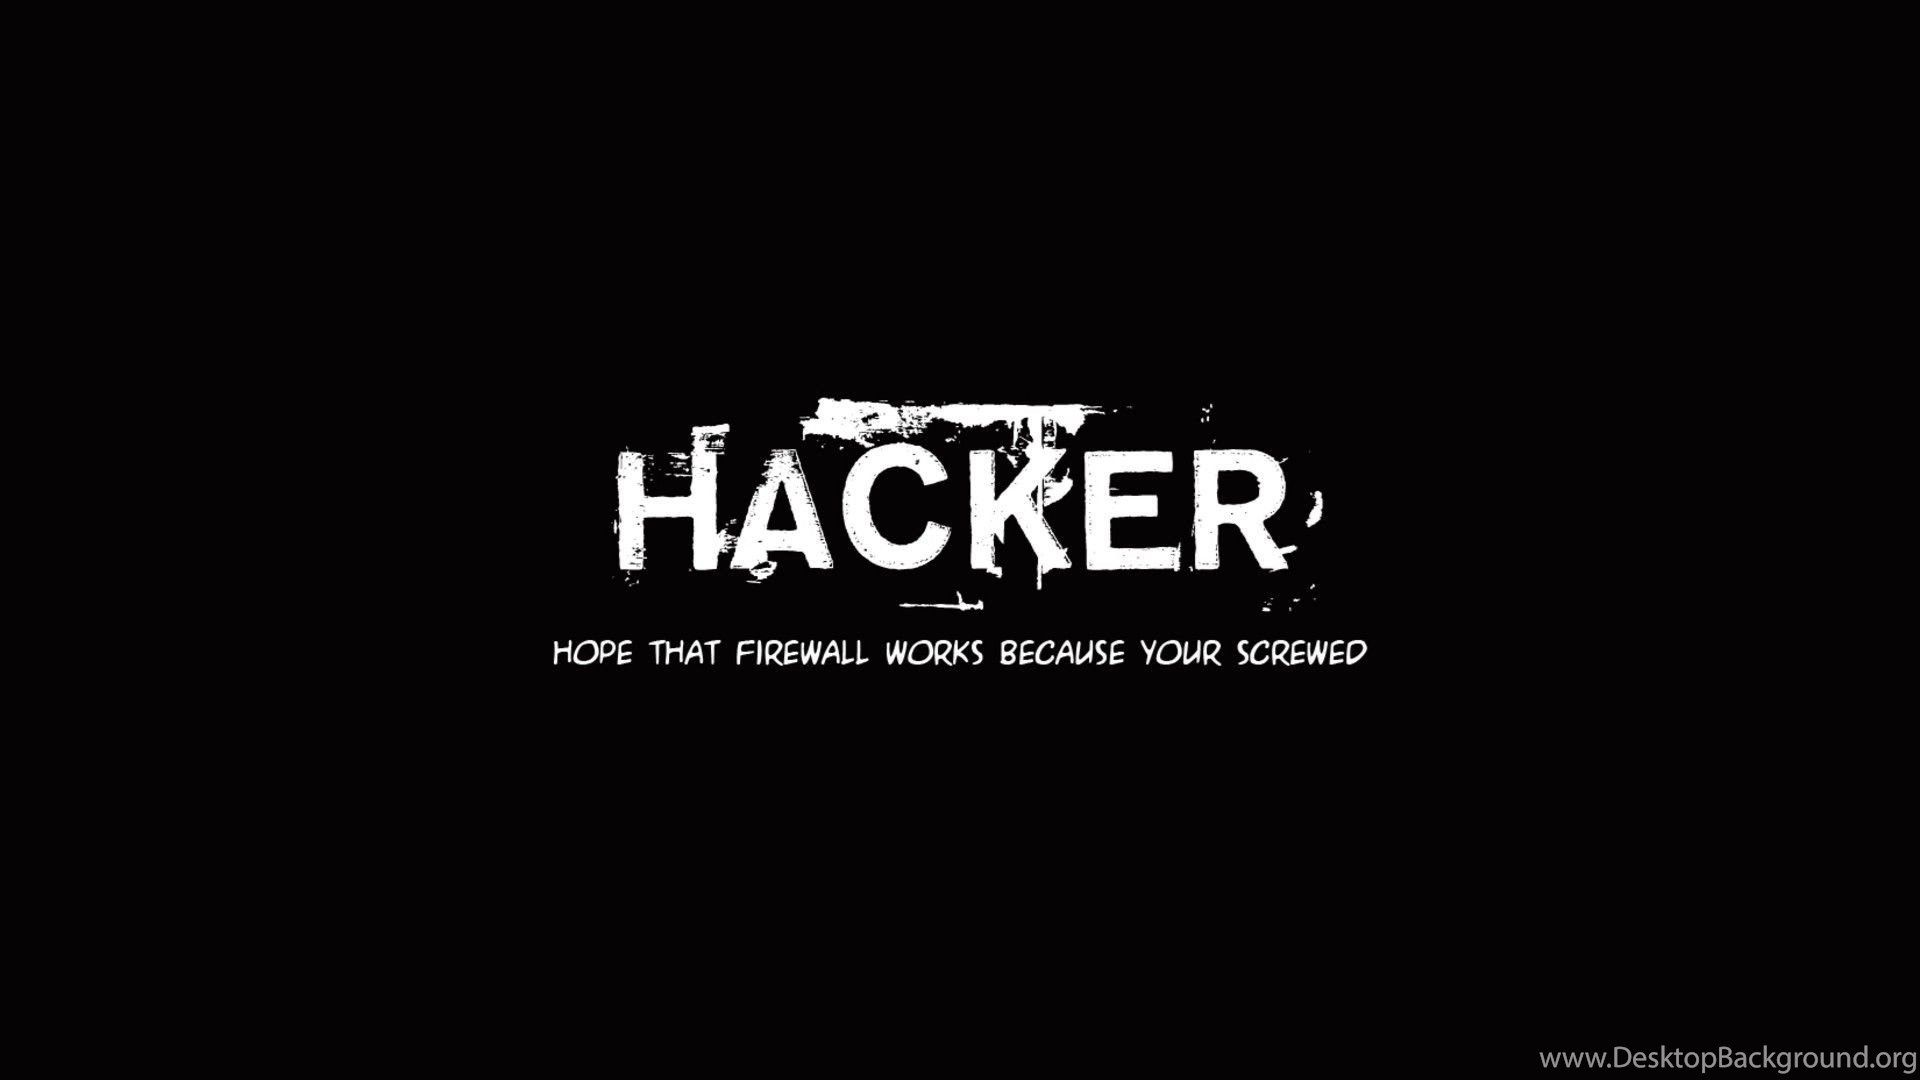 Hacker Computer Wallpaper, Desktop Background Desktop Background